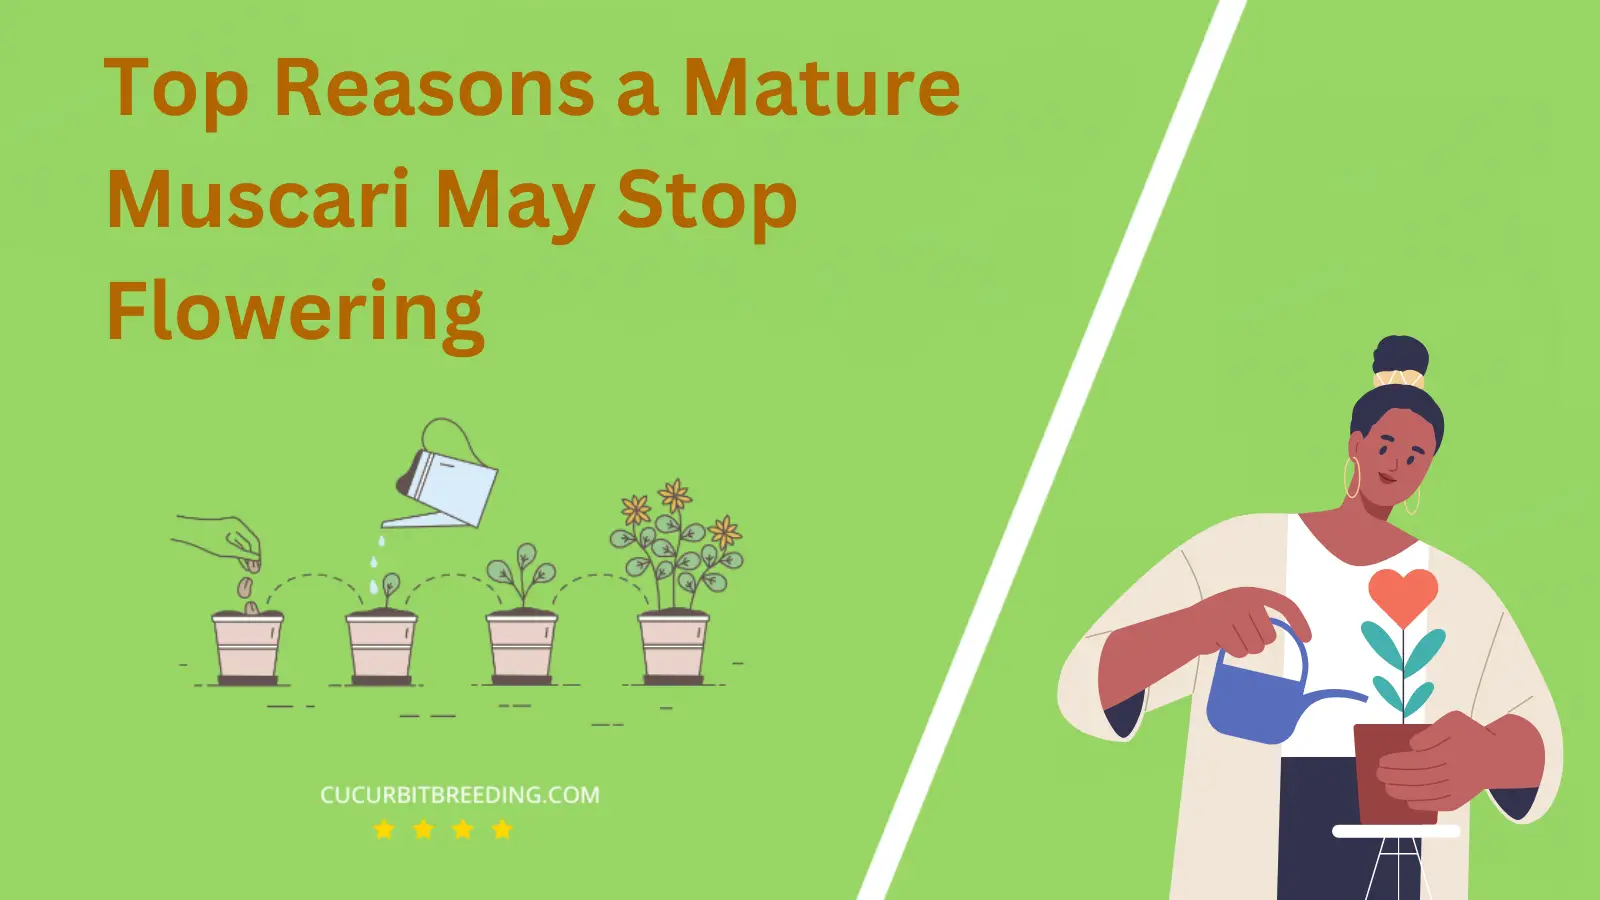 Top Reasons a Mature Muscari May Stop Flowering